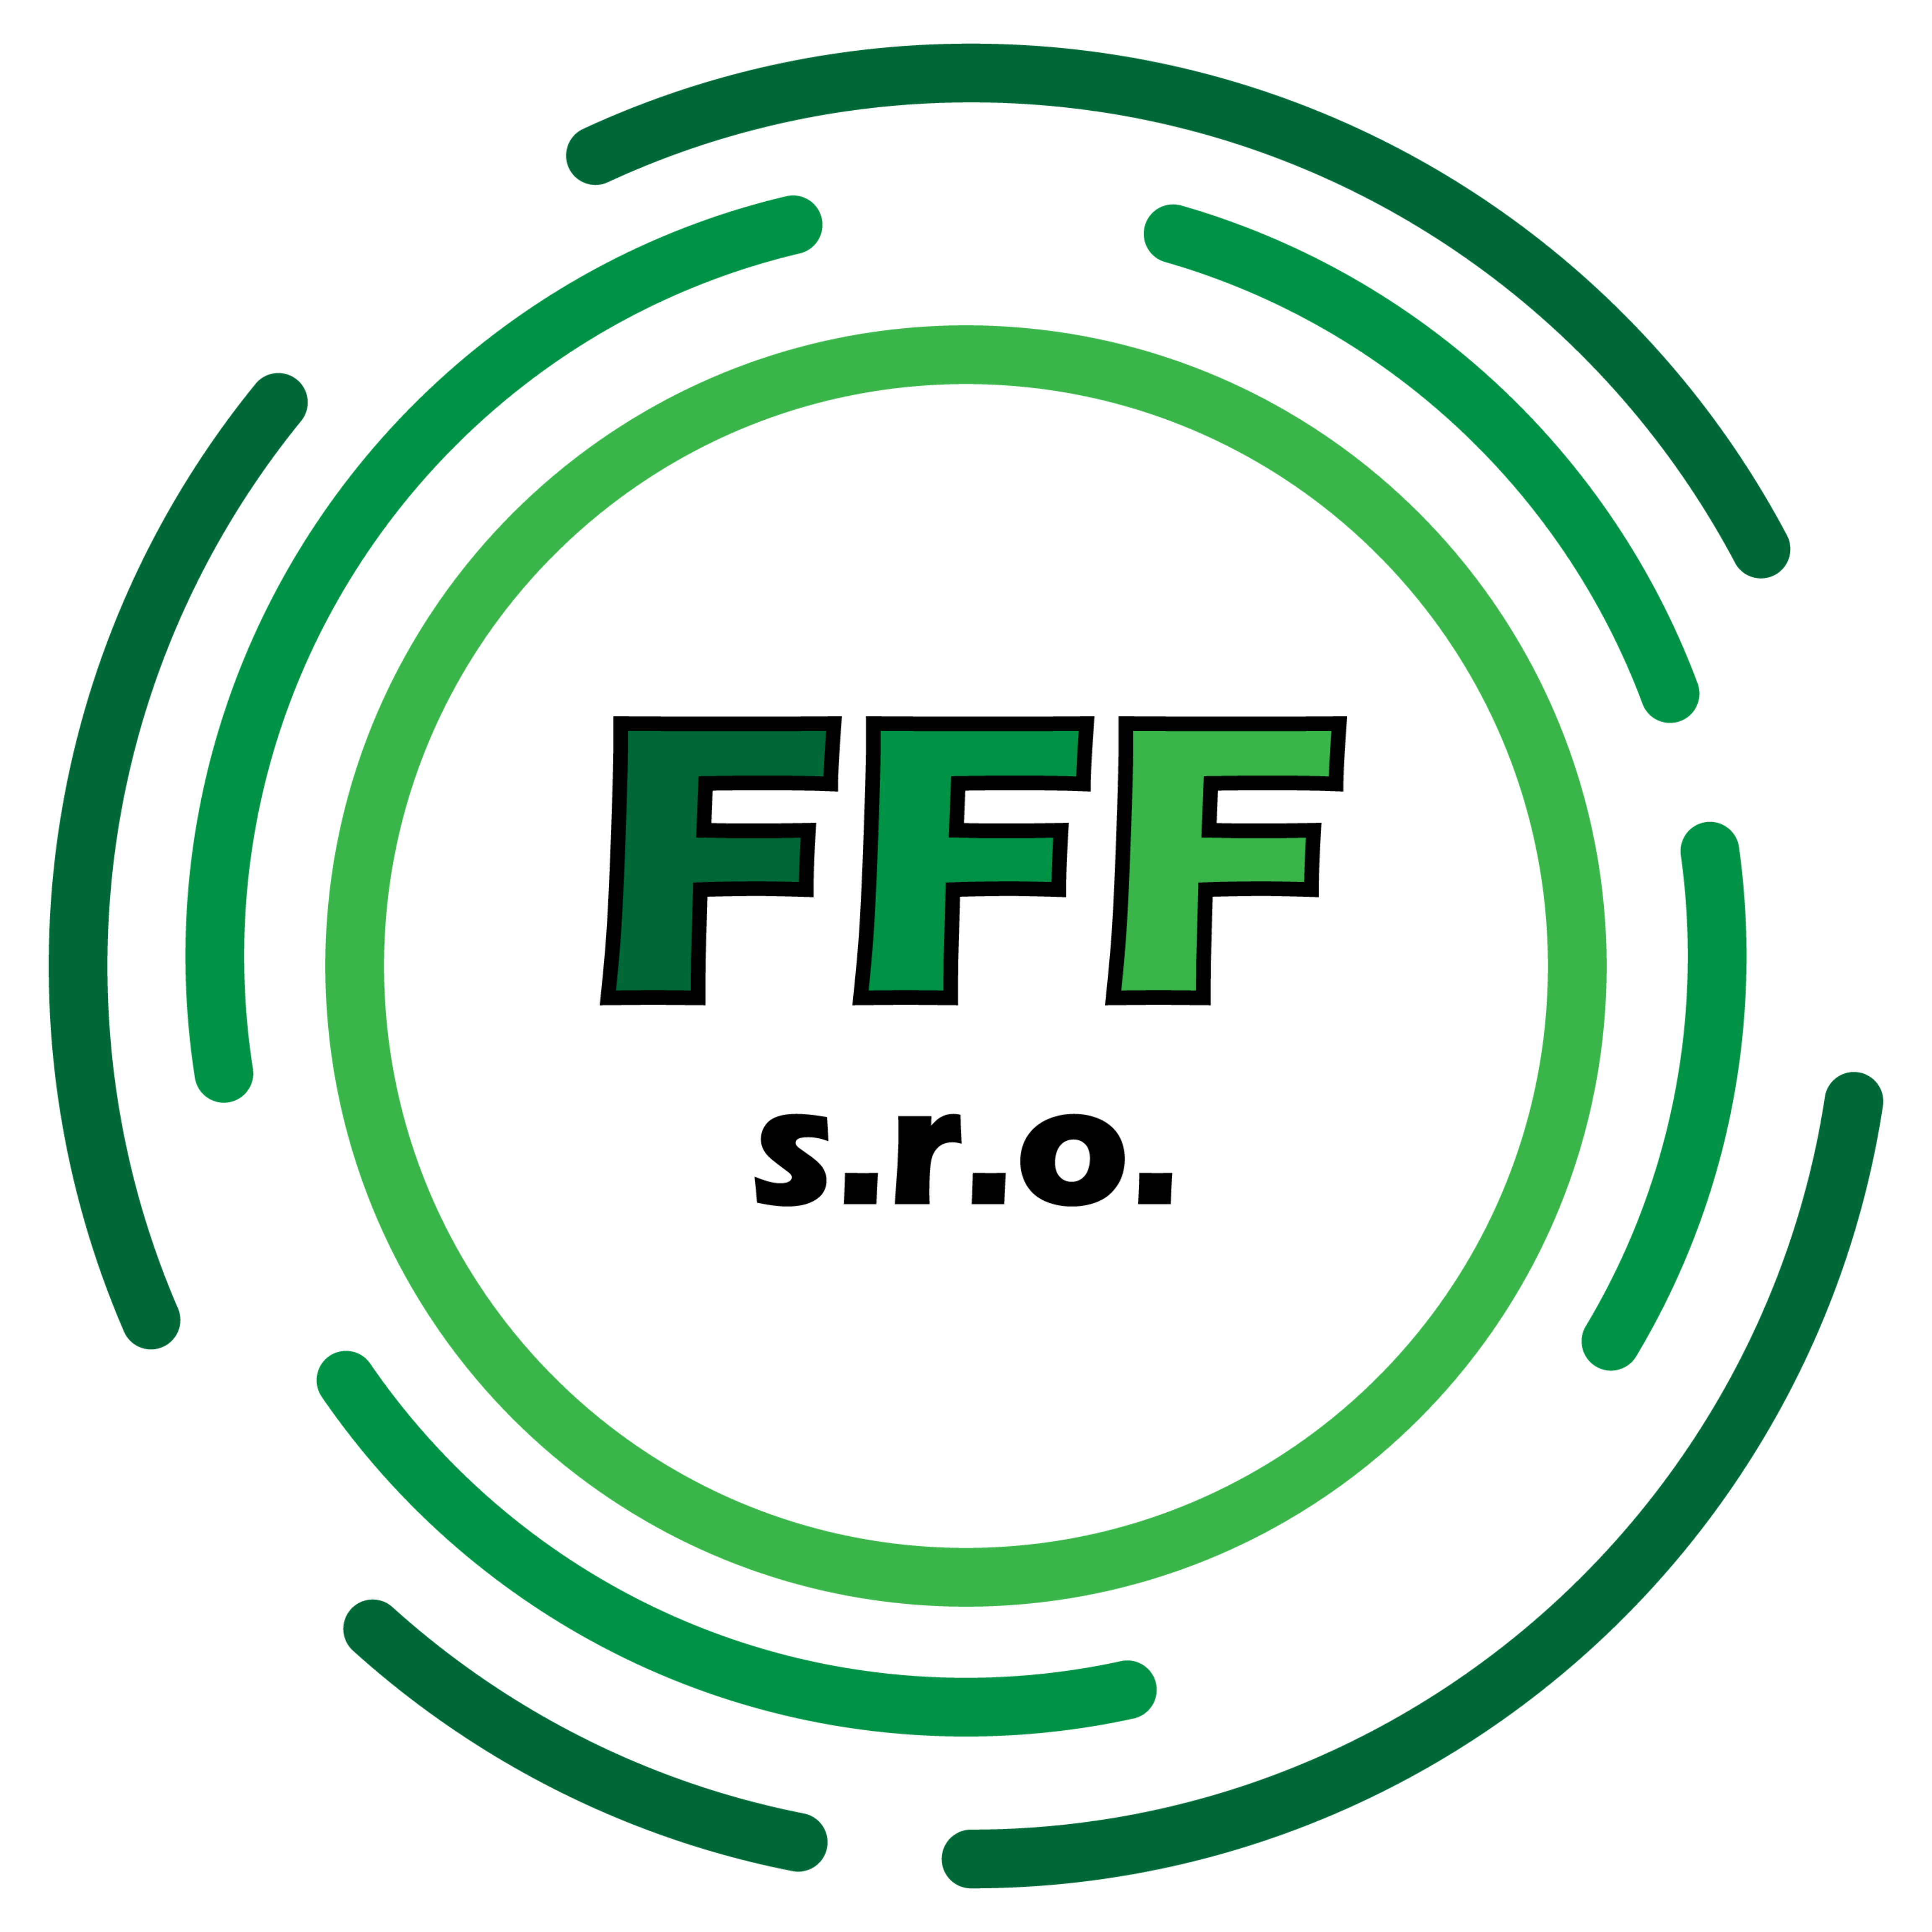 fff-s.r.o.-logo.png